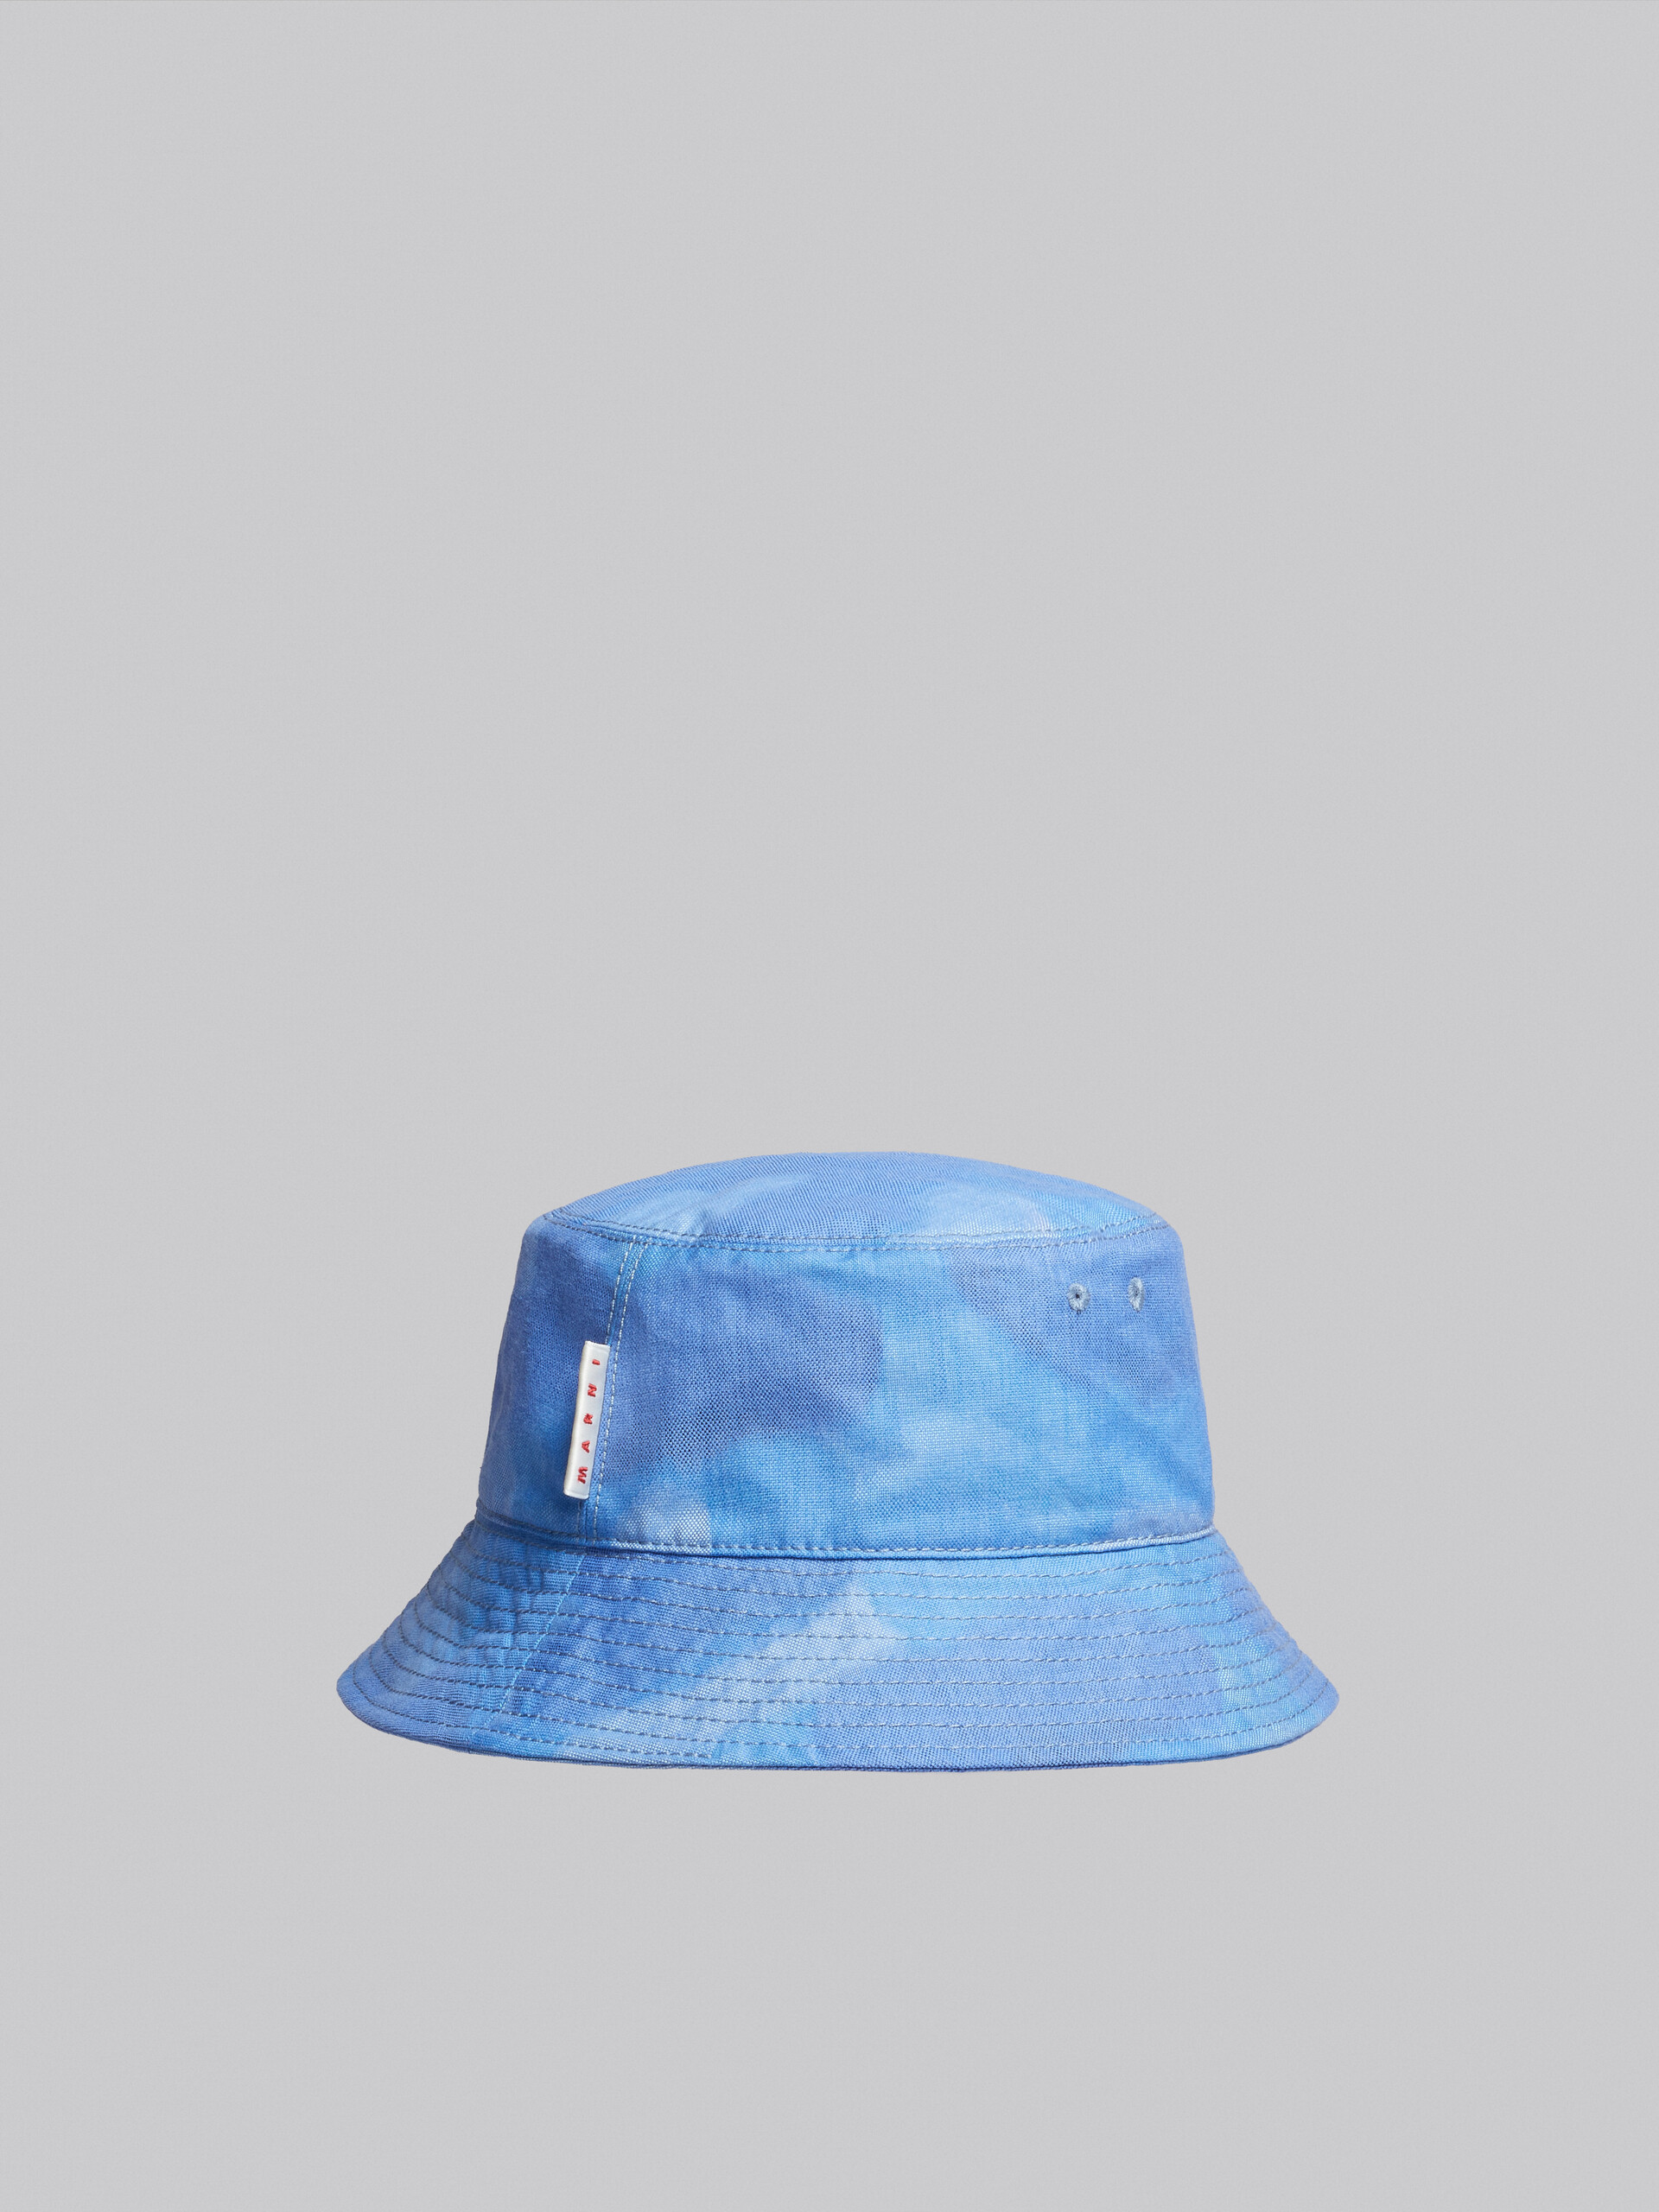 Fischerhut aus Canvas mit hellblauem Wolken-Motiv - Hüte - Image 3